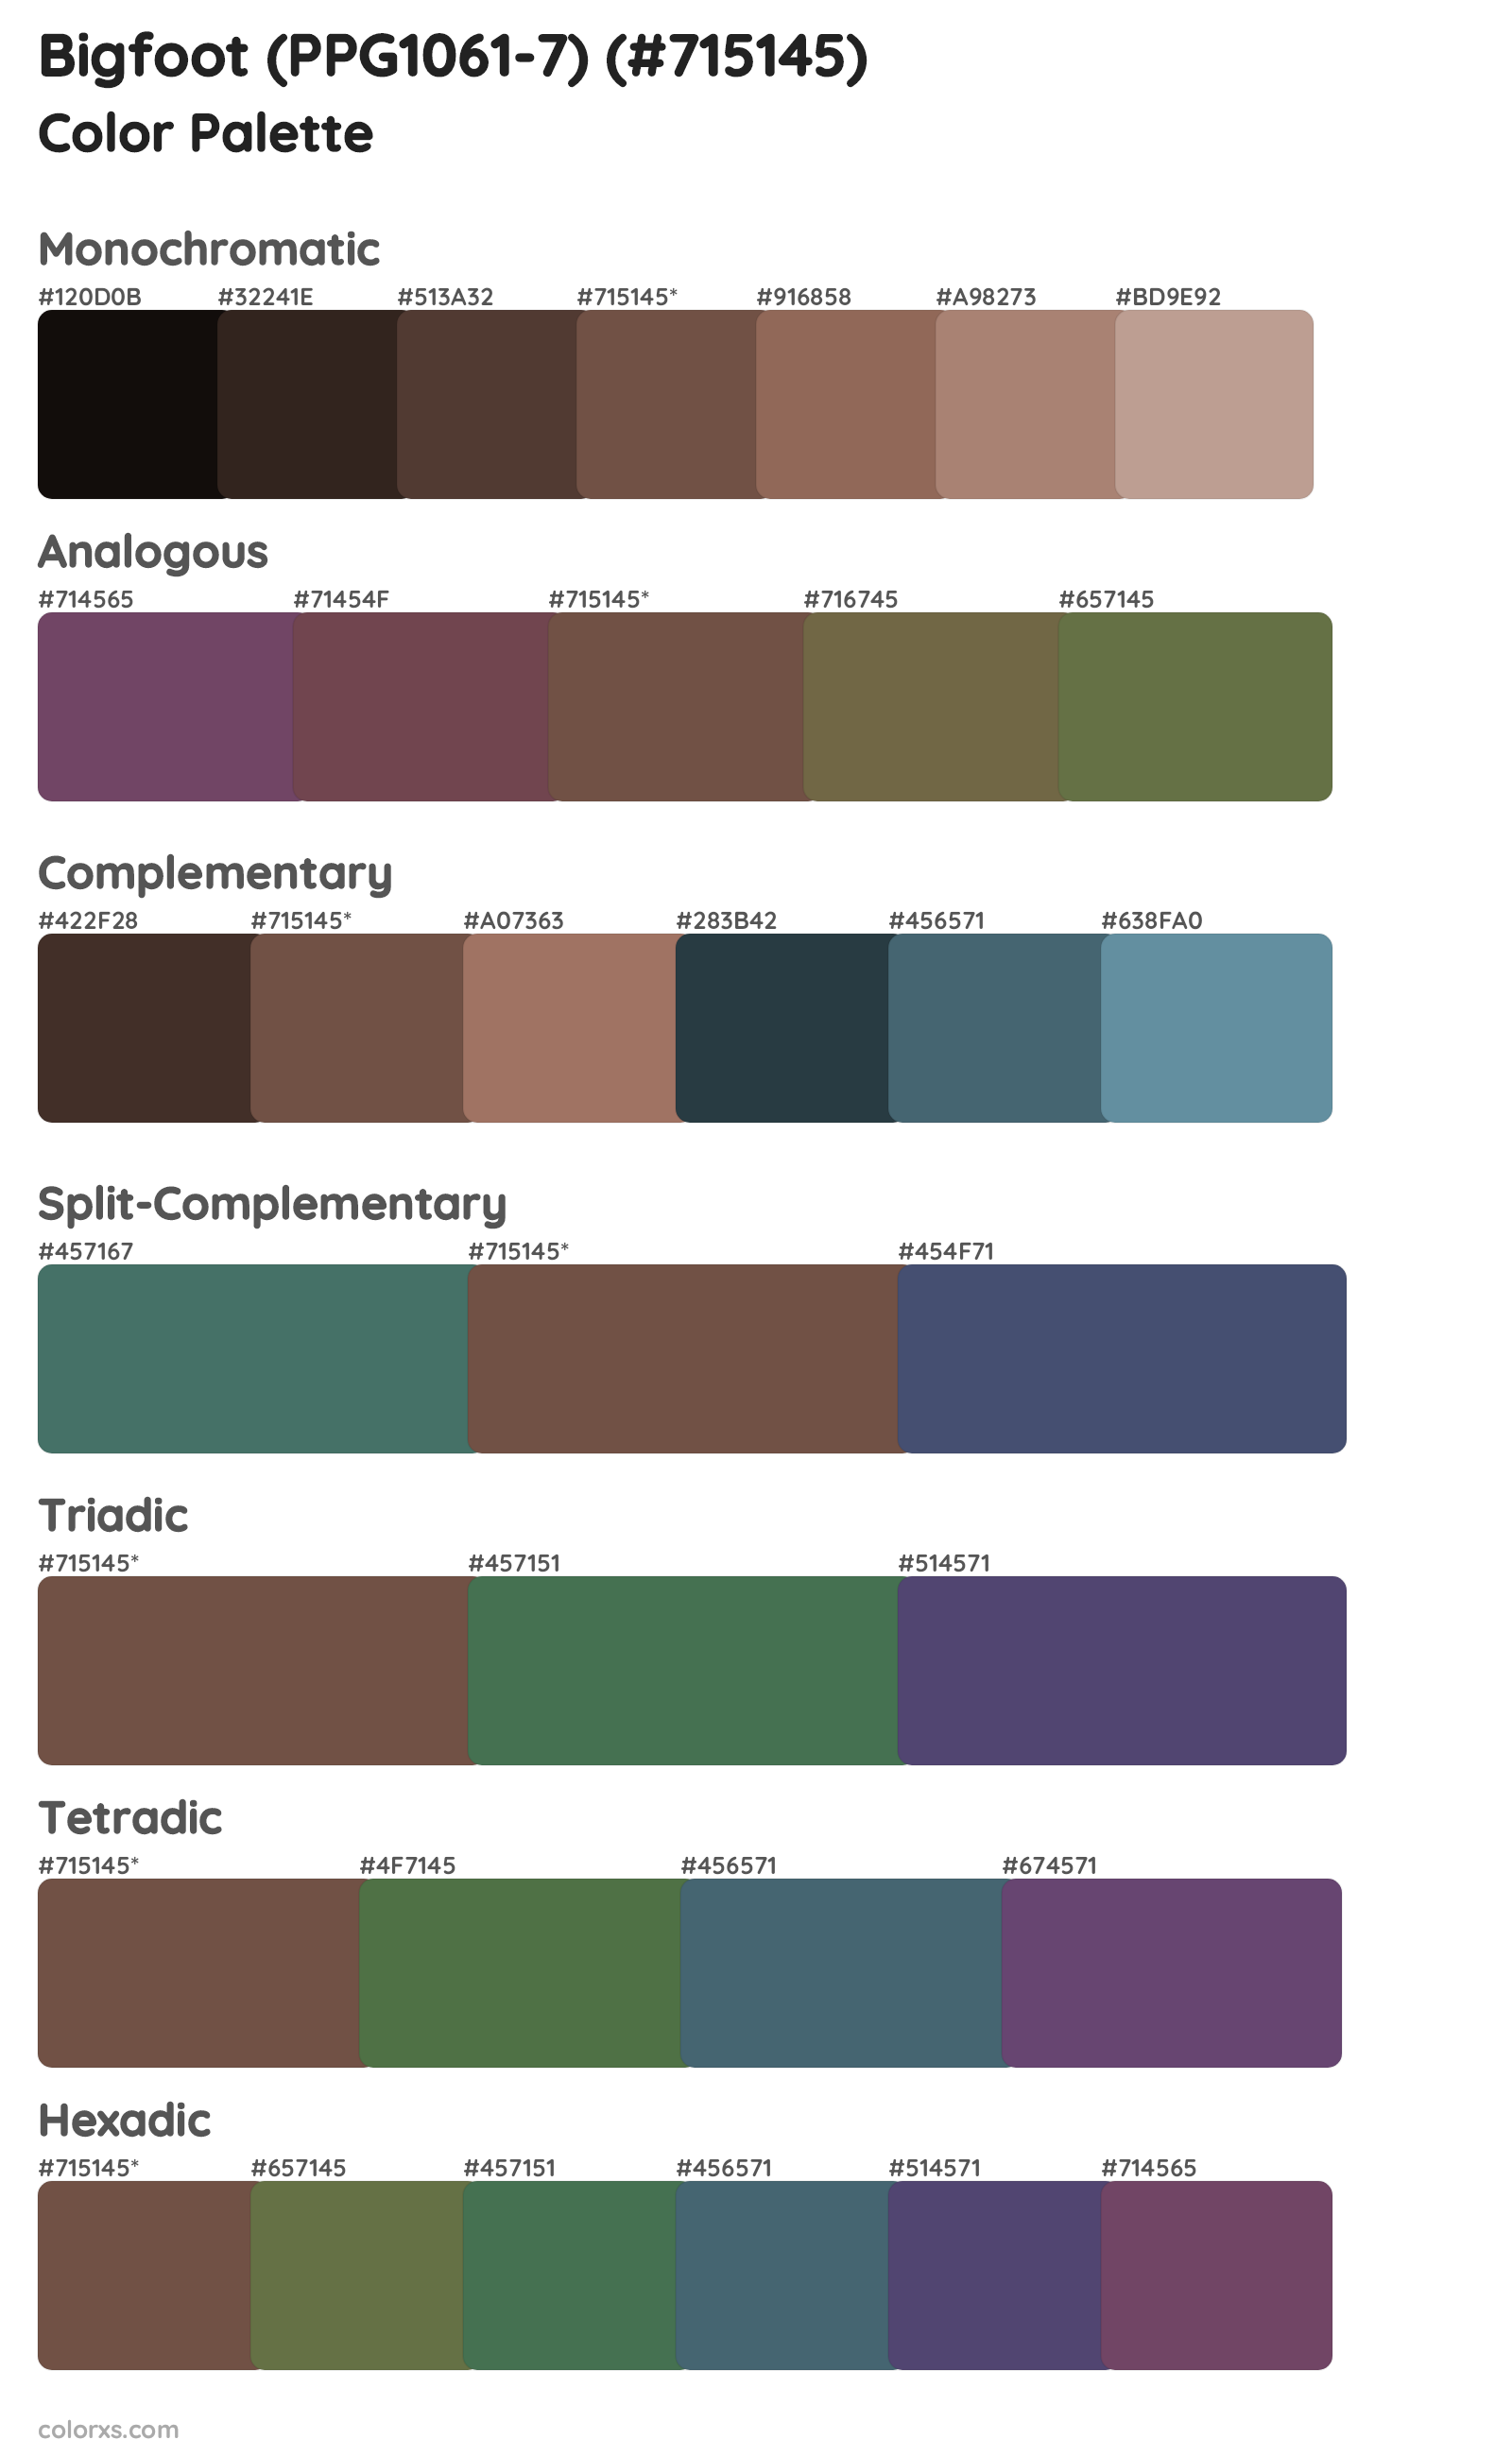 Bigfoot (PPG1061-7) Color Scheme Palettes